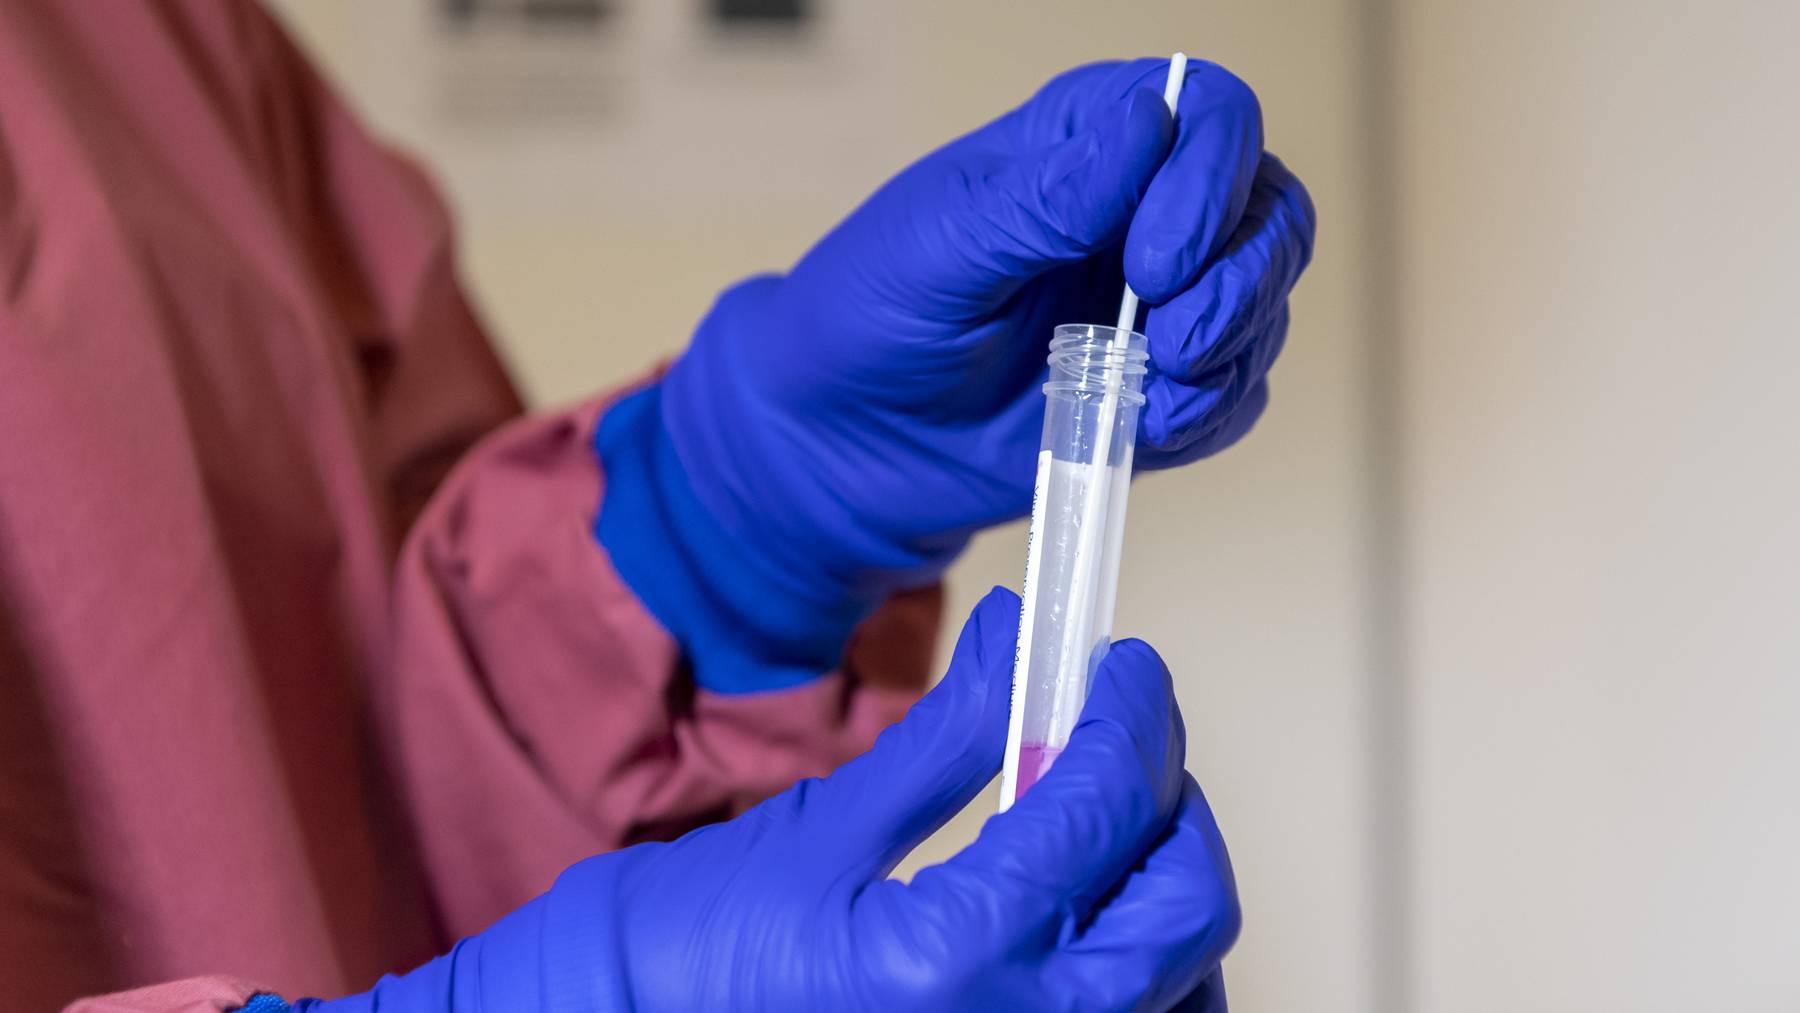 Eine Probe wird für die Abklärung auf das Coronavirus in einem Labor vorbereitet. (Symbolbild)